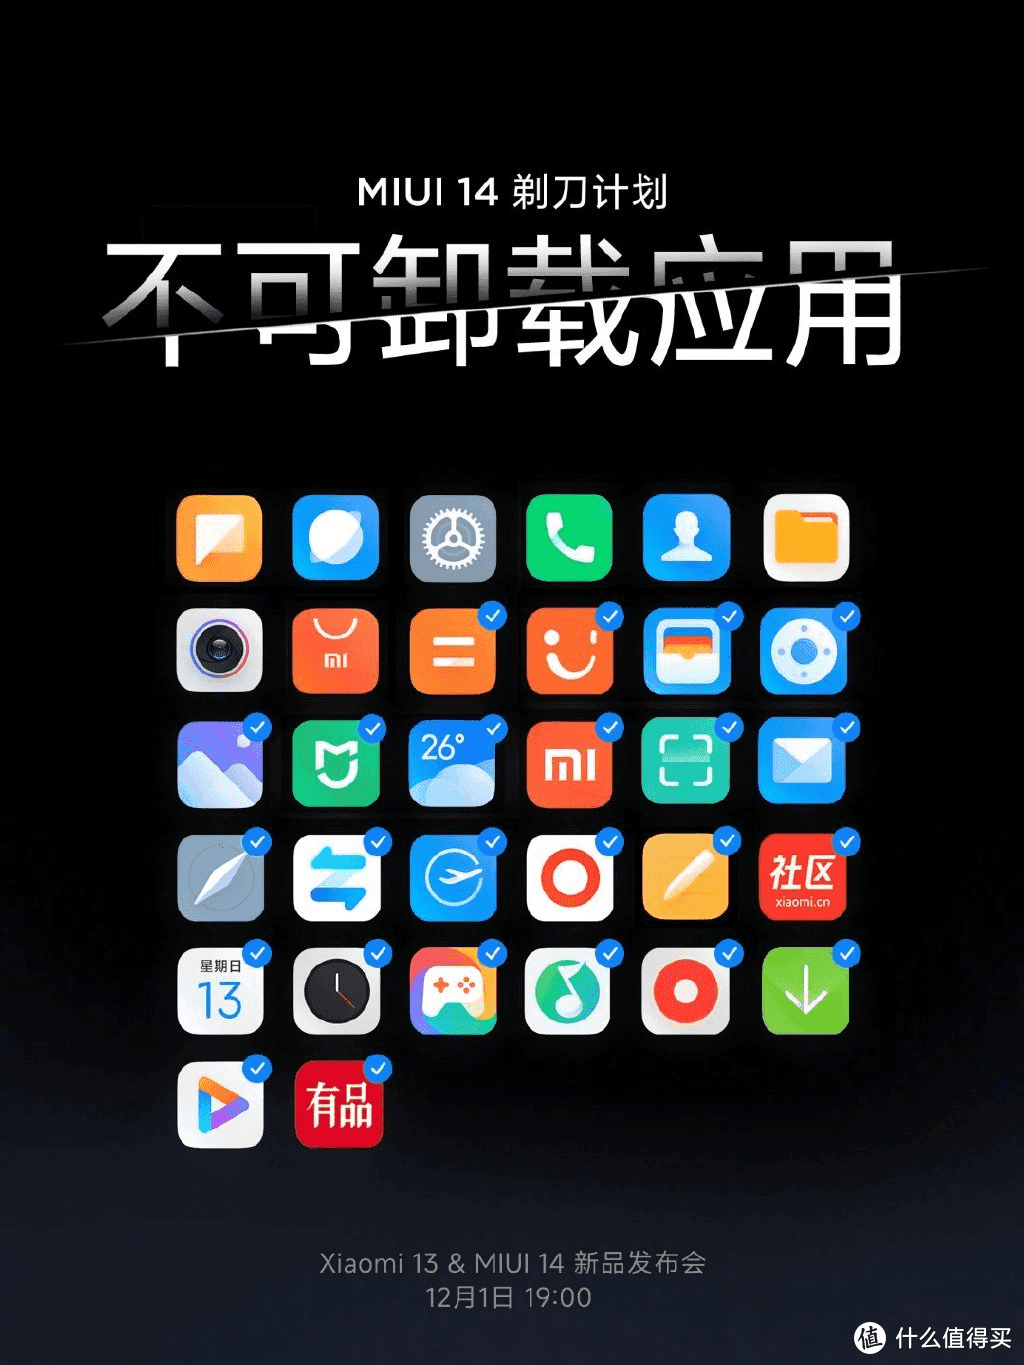 MIUI 14：iOS很丝滑？打的就是精锐！新版MIUI你怎么看？